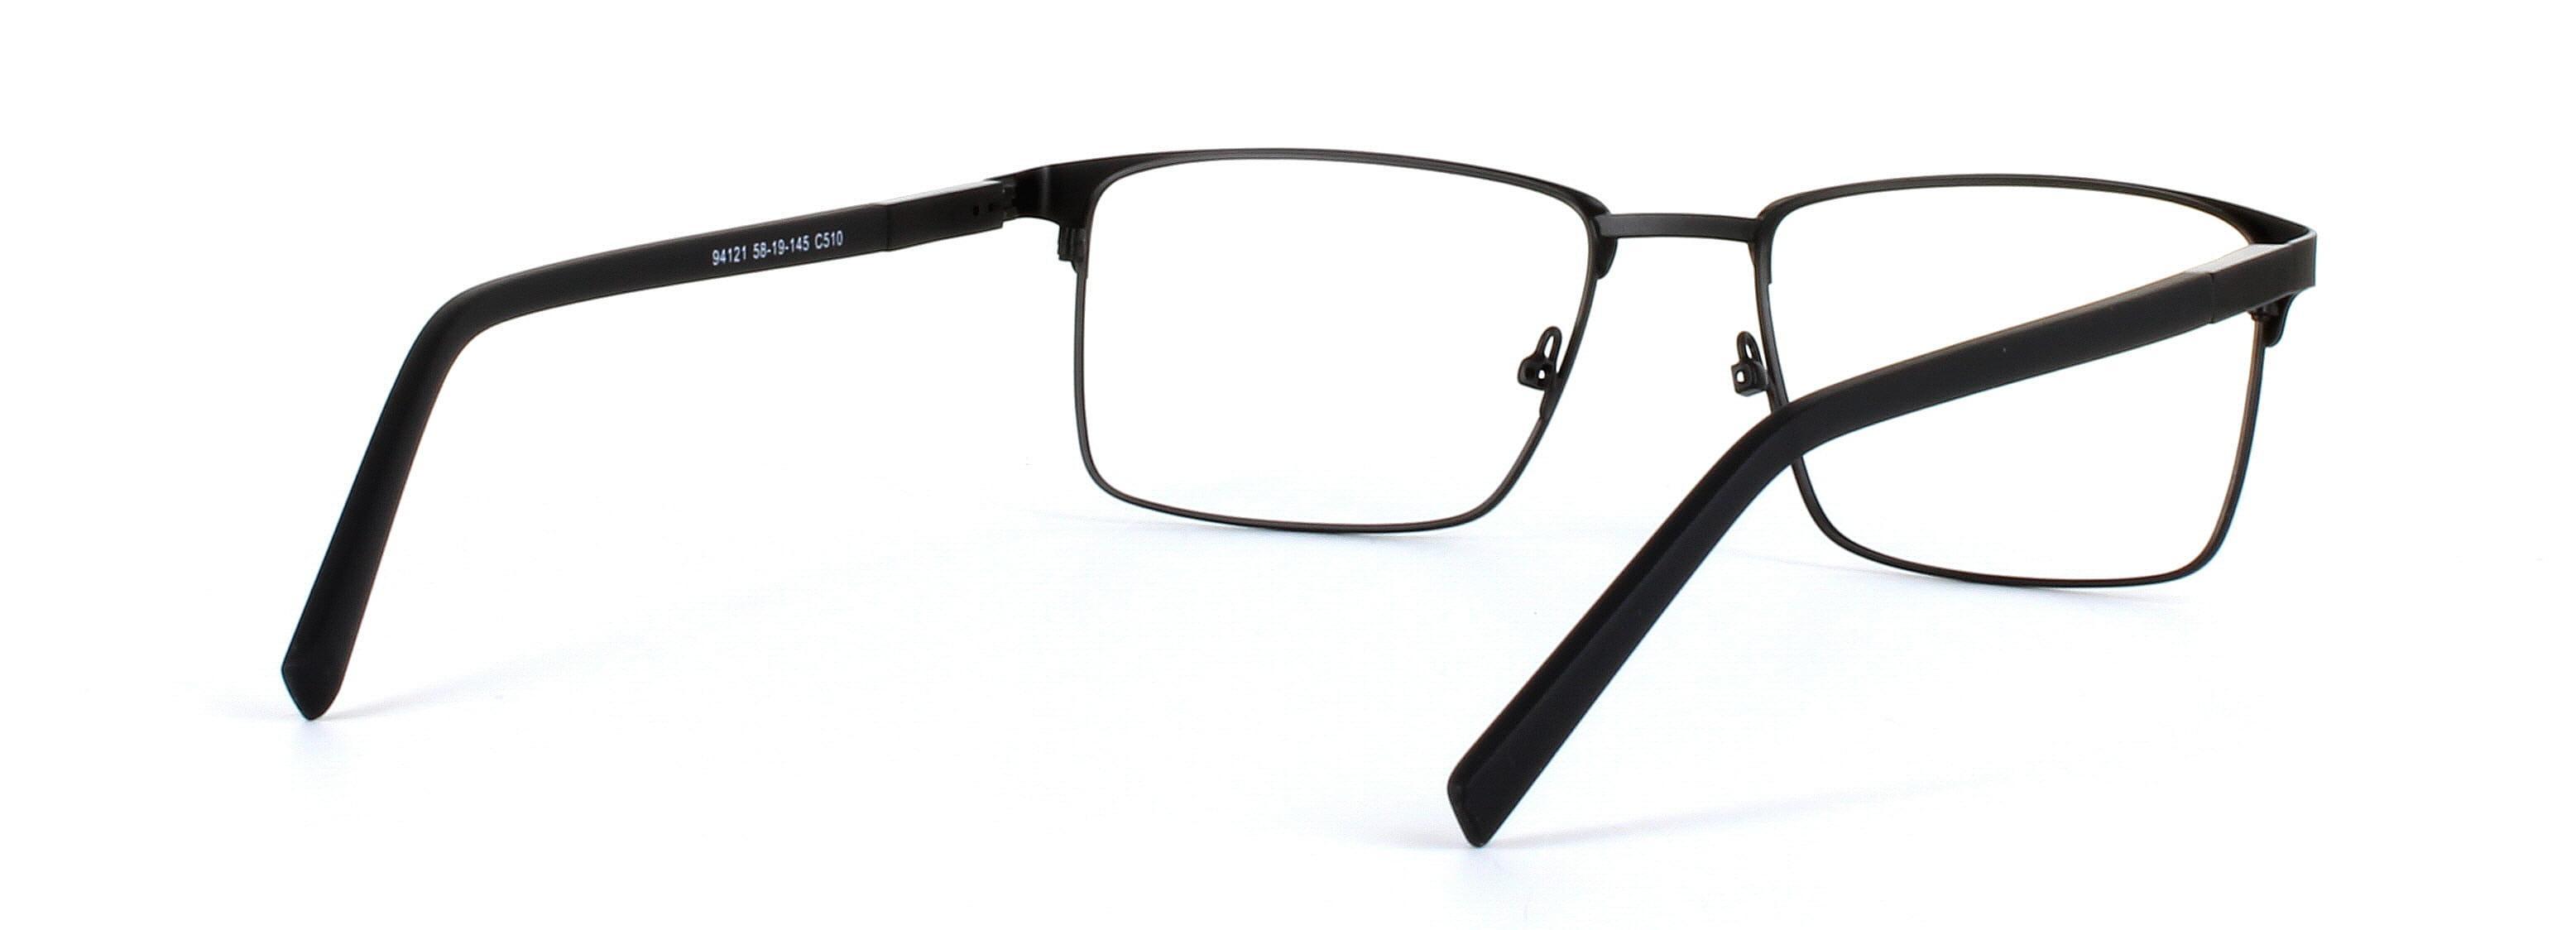 Natark Black Full Rim Metal Glasses - Image View 4